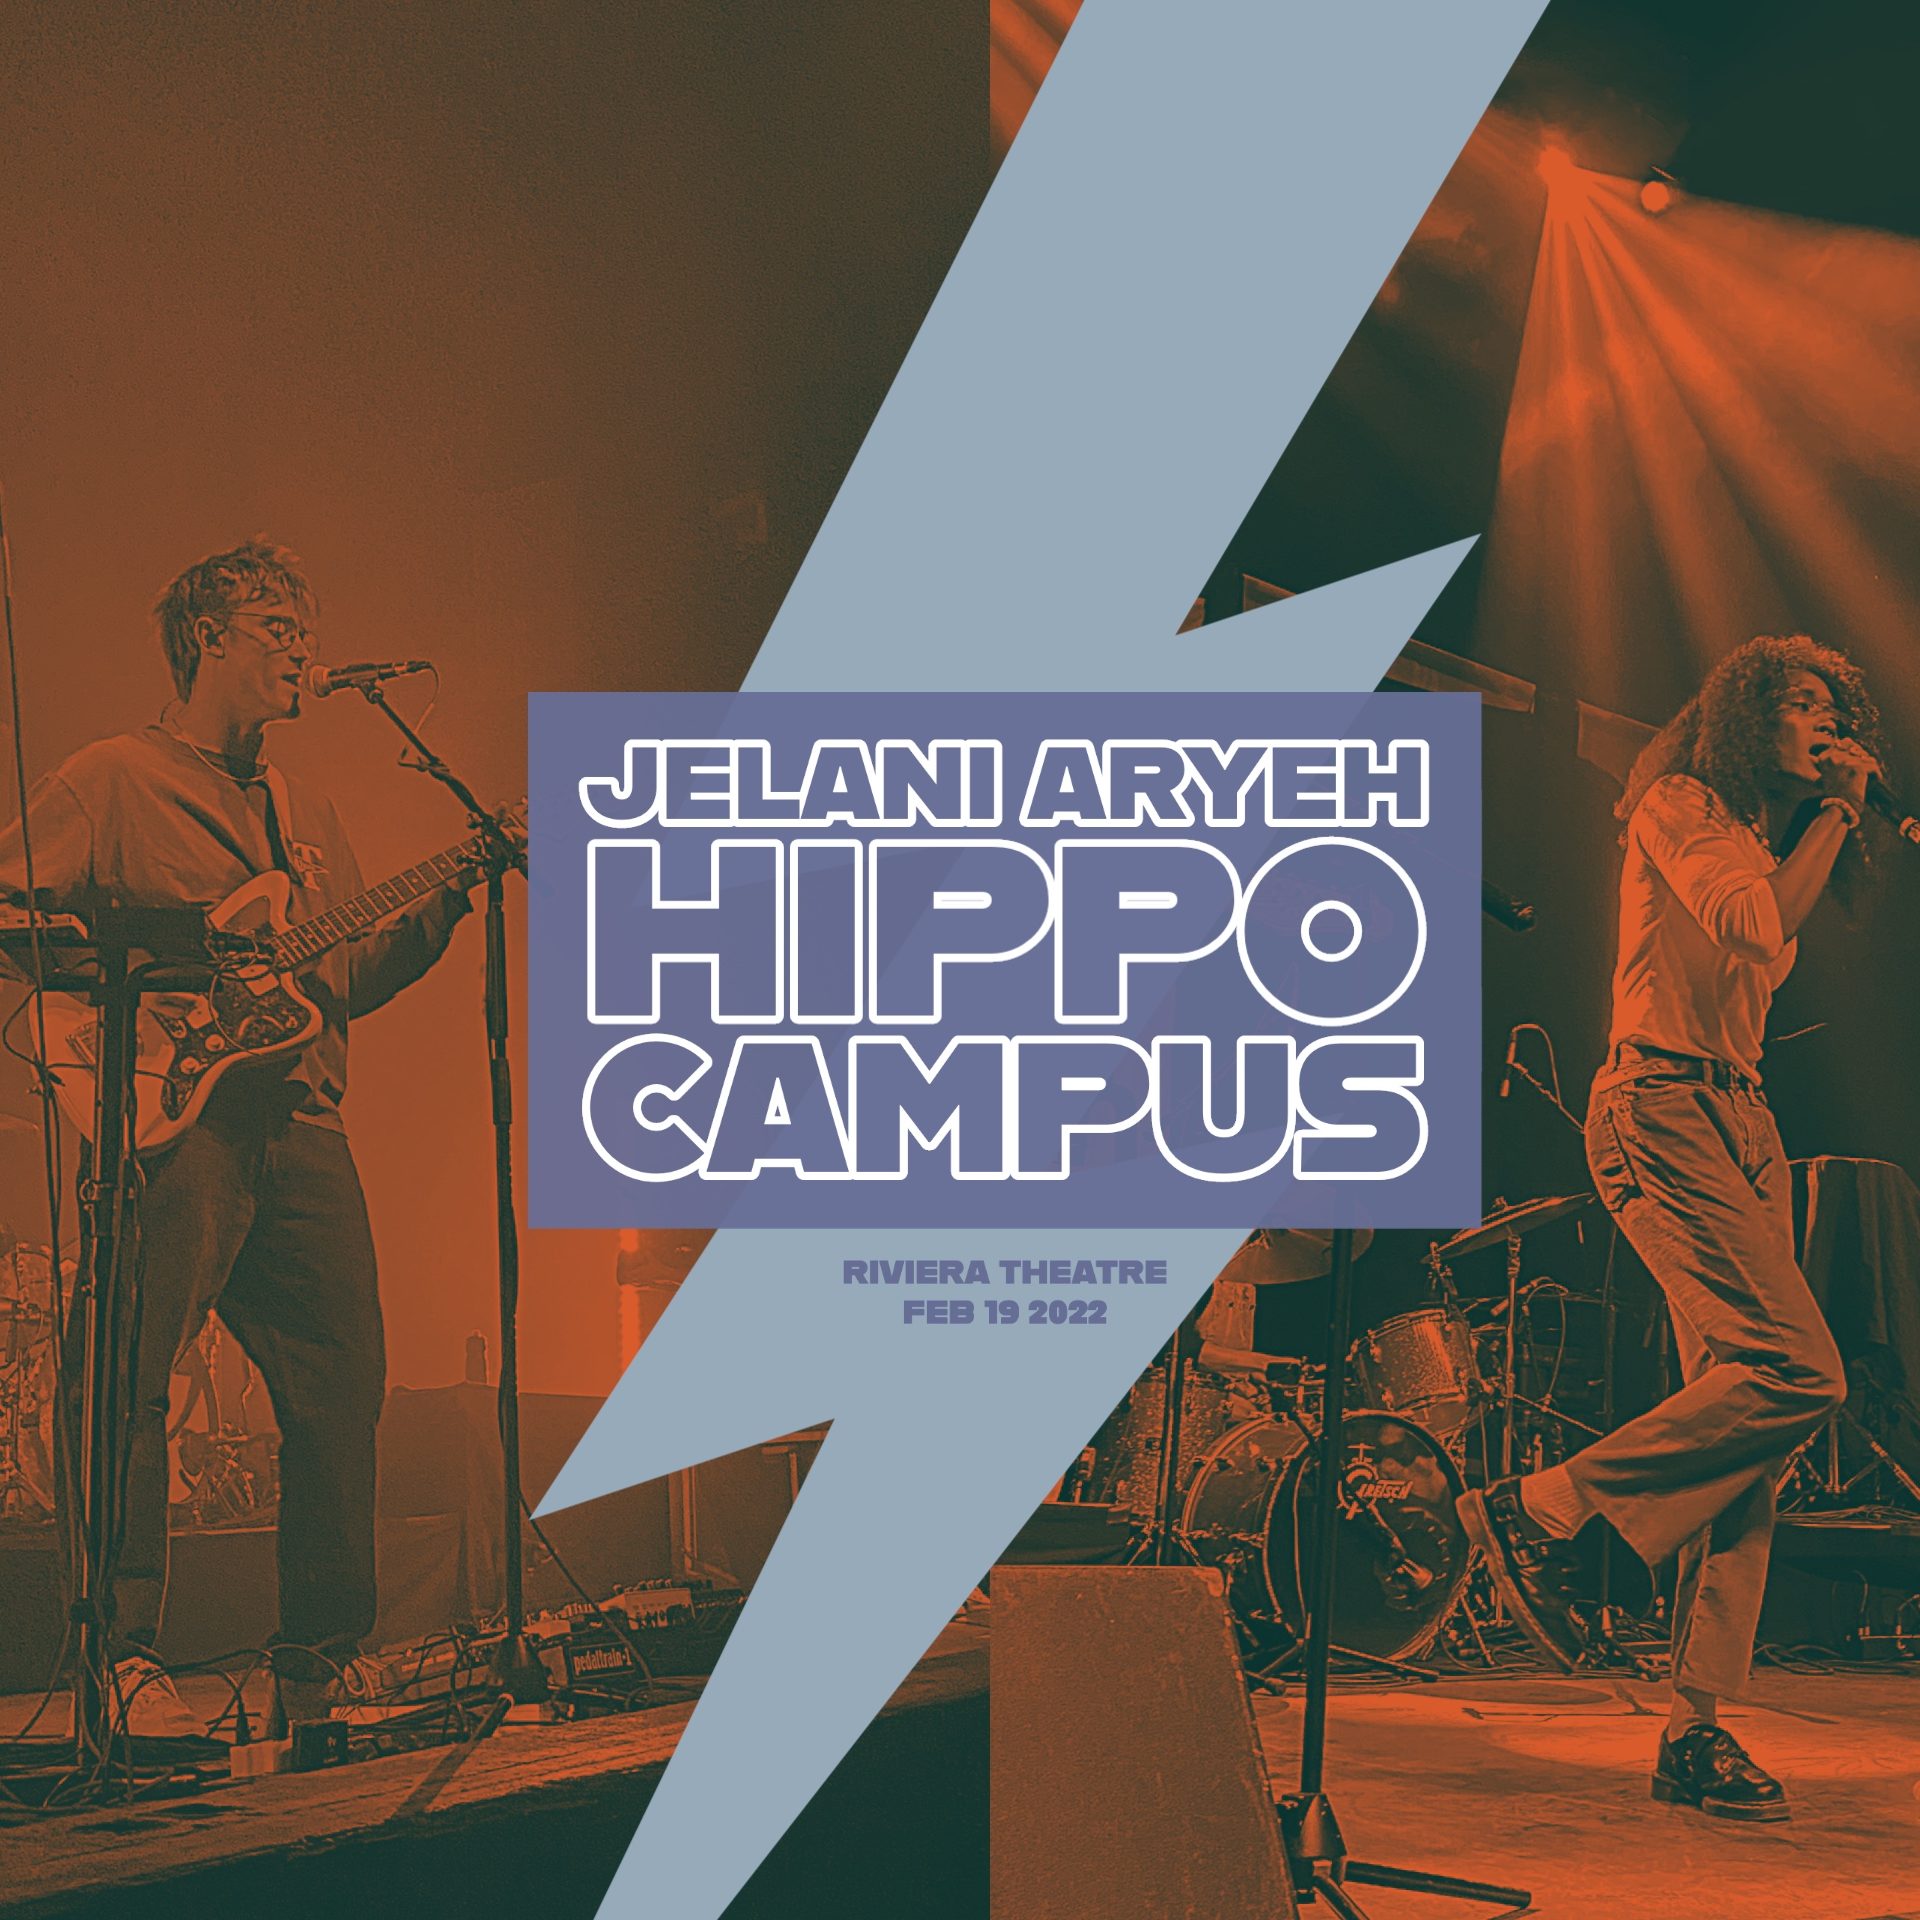 Hippo Campus and Jelani Aryeh @ Riviera Theatre